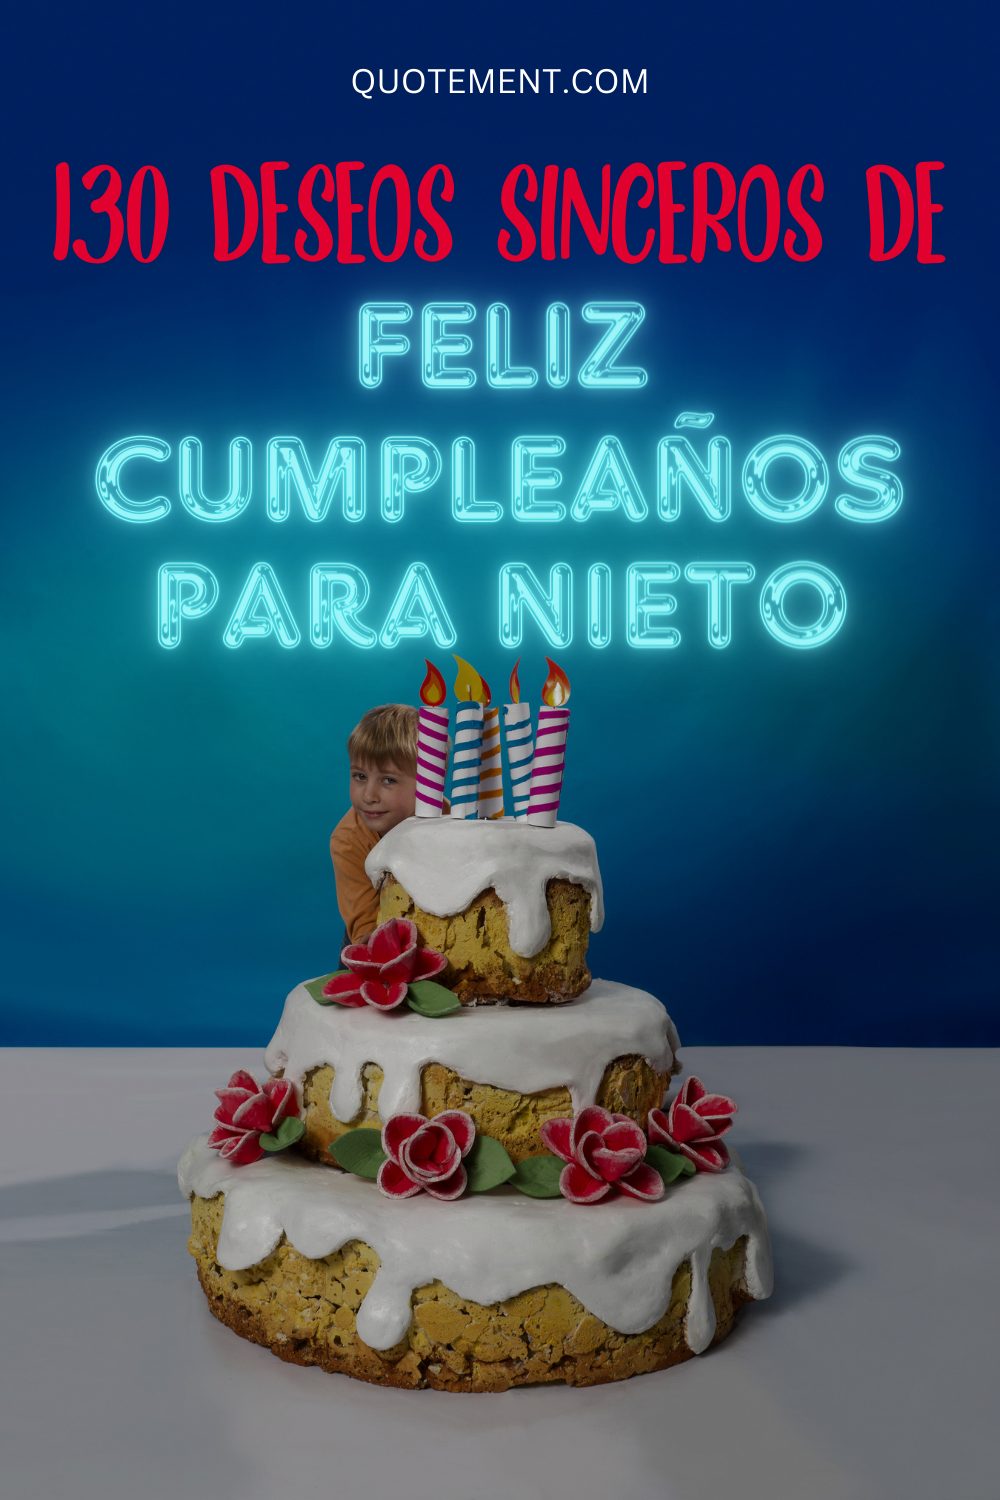 Amazing List Of 130 Deseos De Feliz Cumpleaños Para Nieto